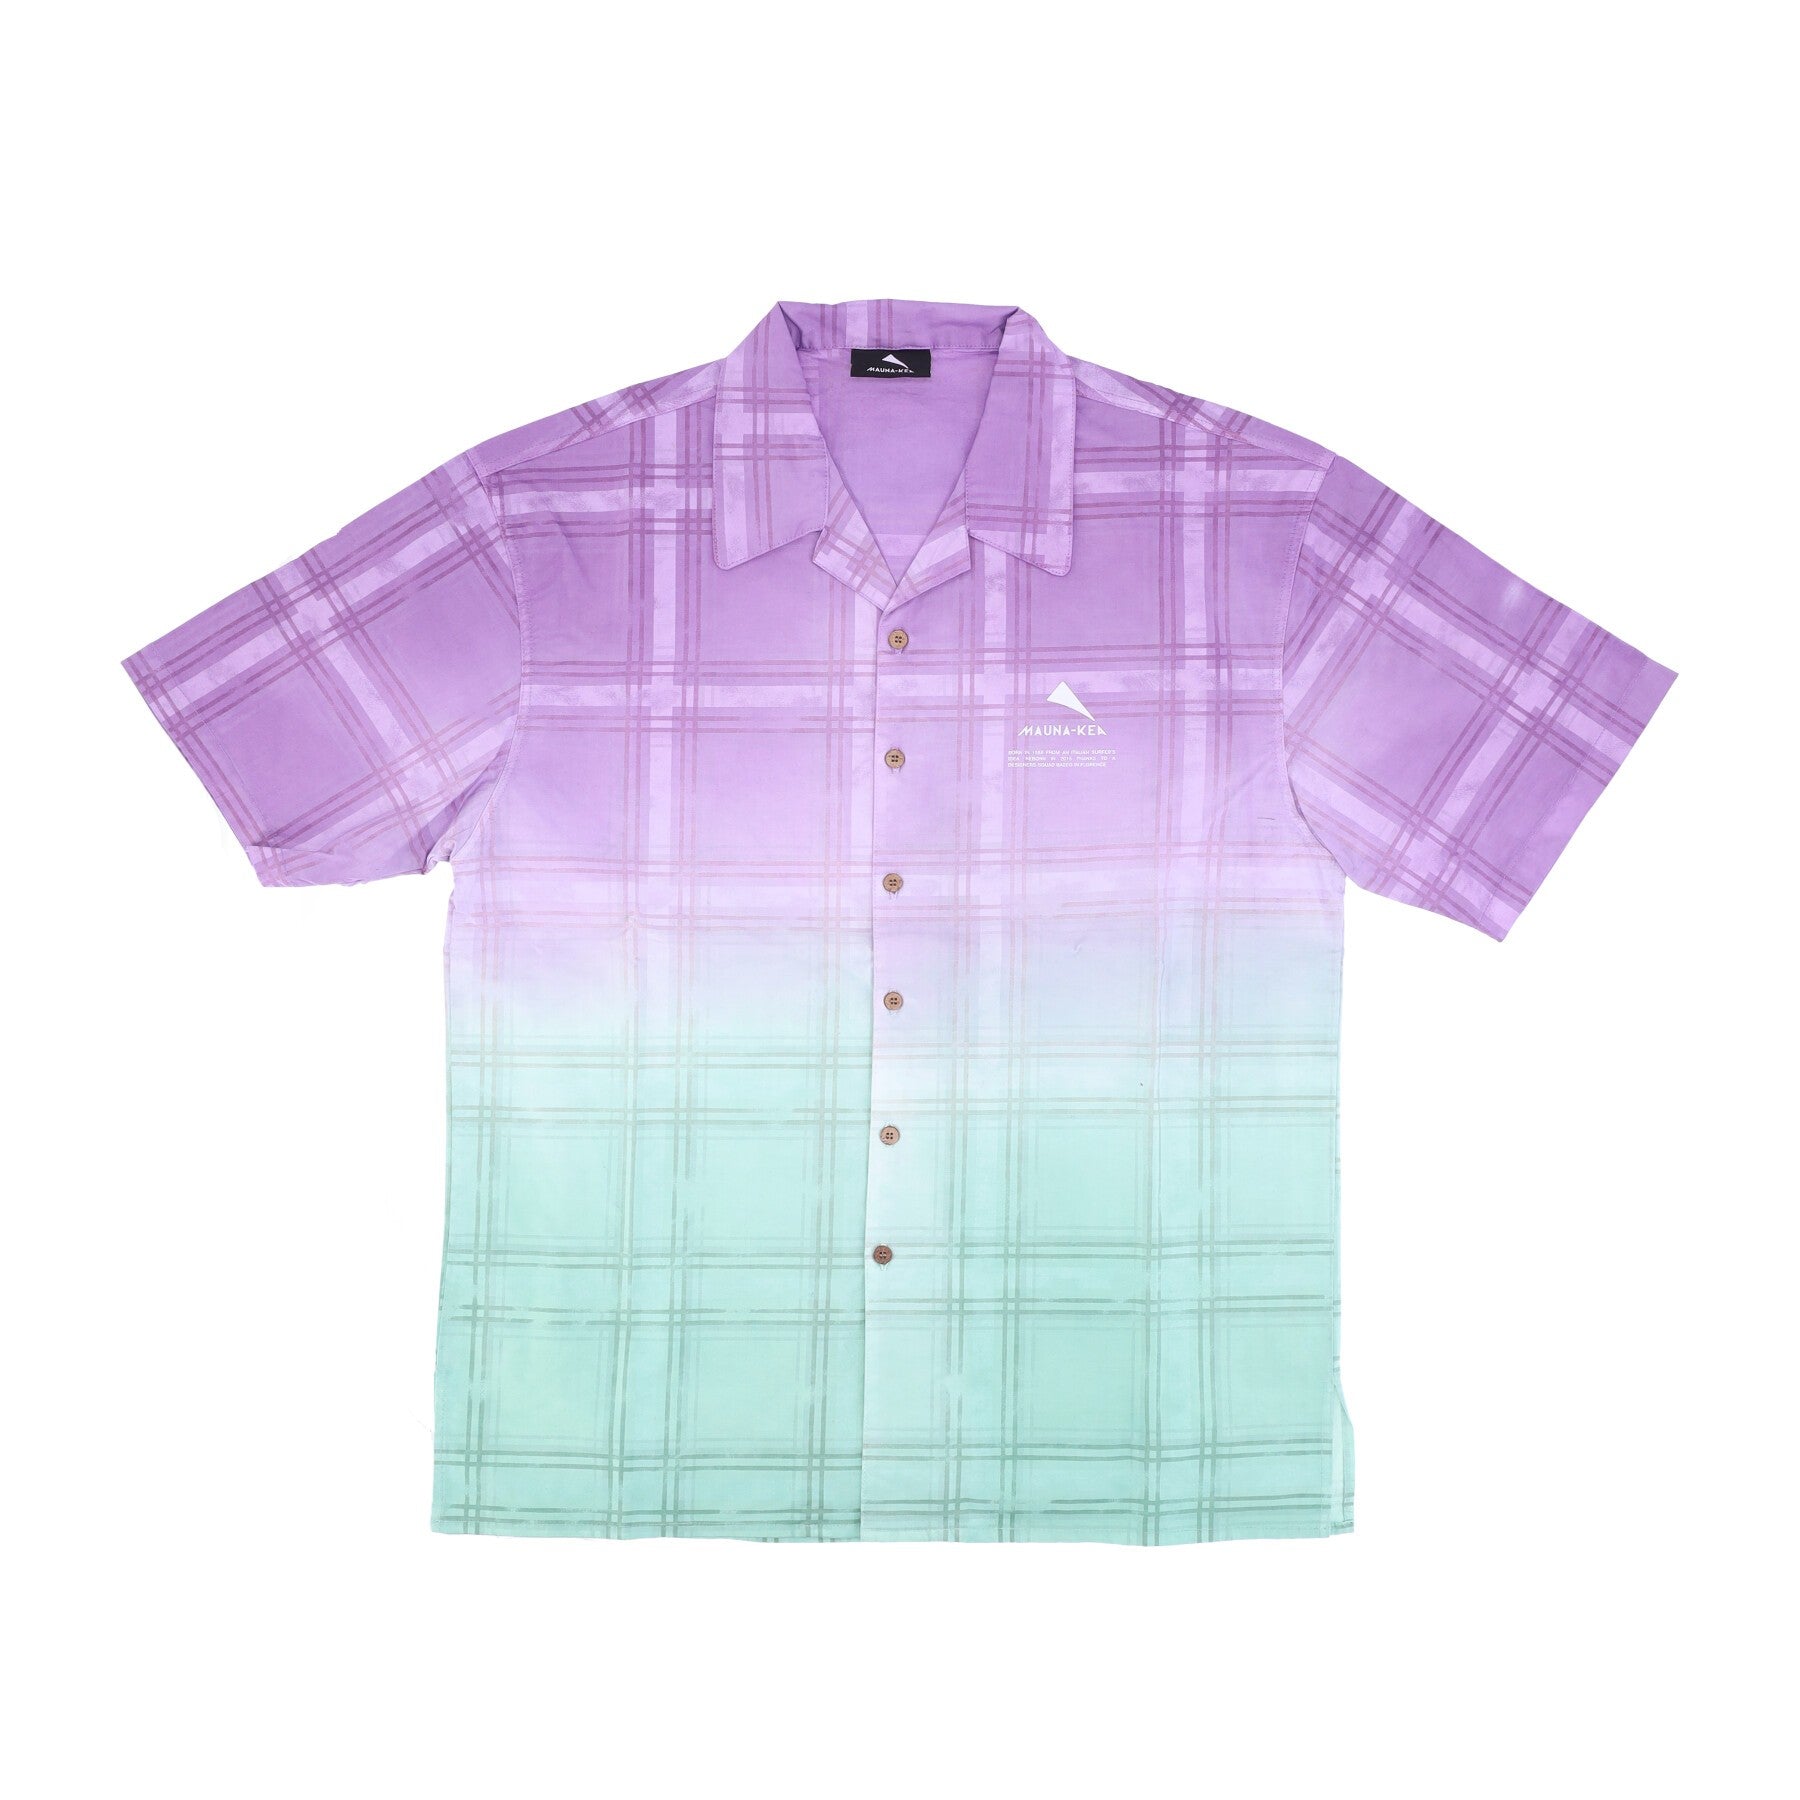 Camicia Manica Corta Uomo Checked Degrade' Bowling Shirt Purple/green